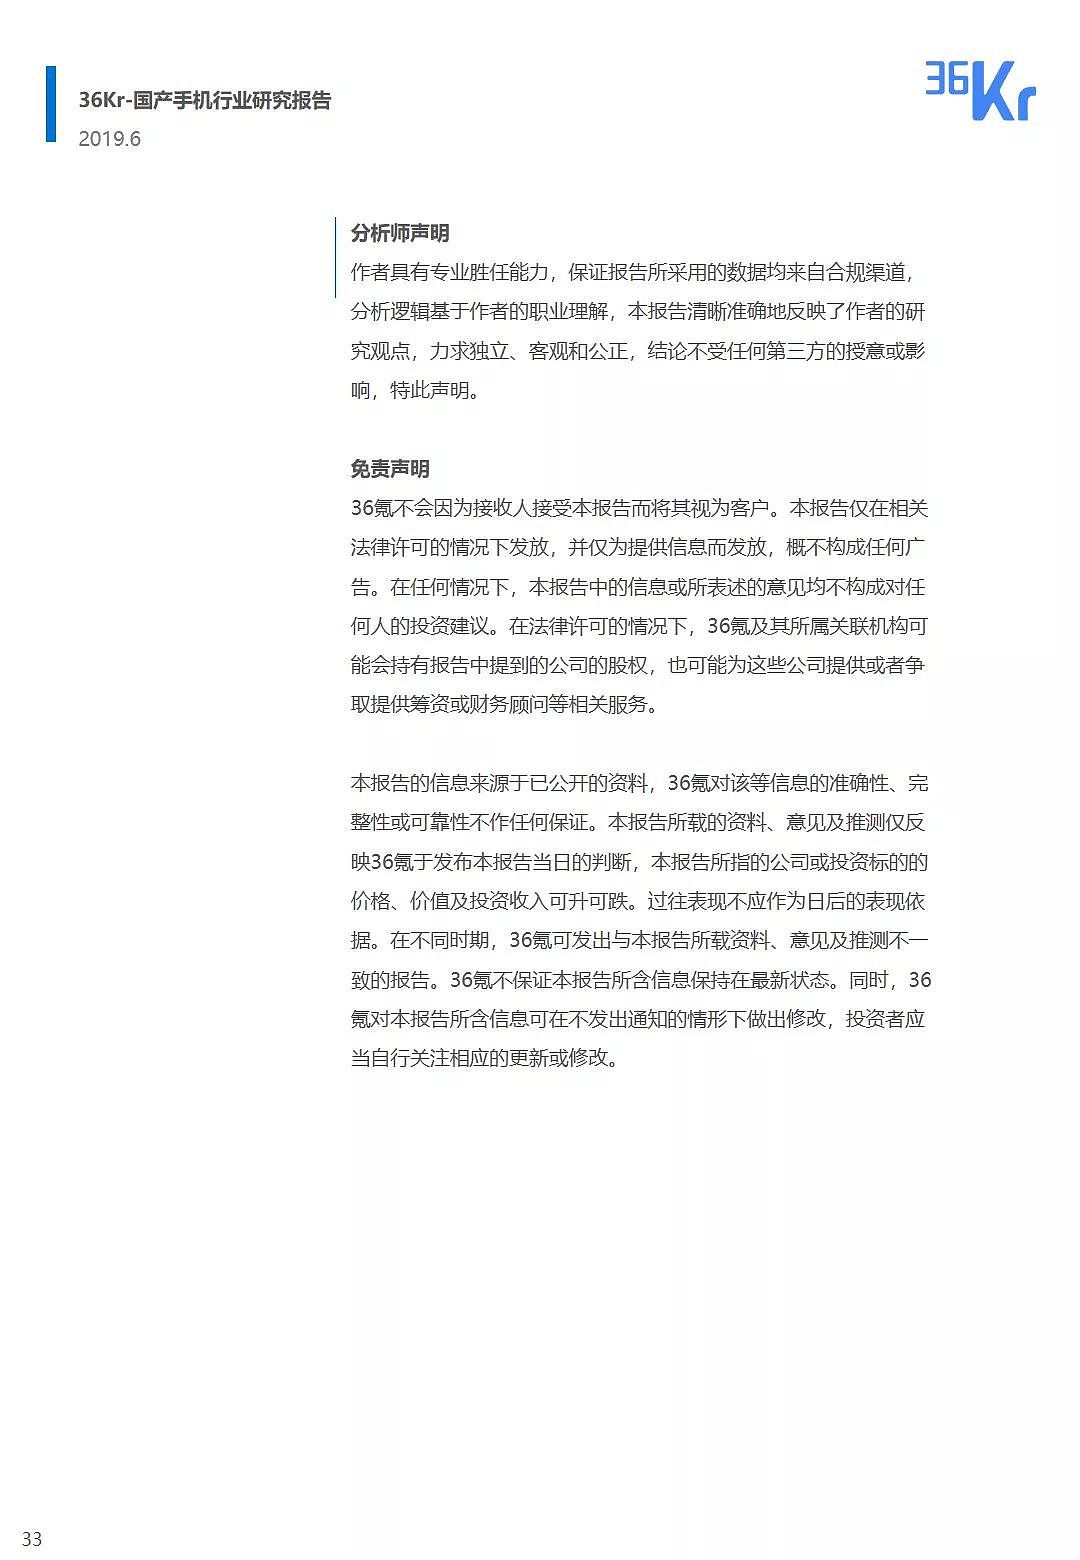 中国手机品牌市场营销研究报告 | 36氪研究 - 34